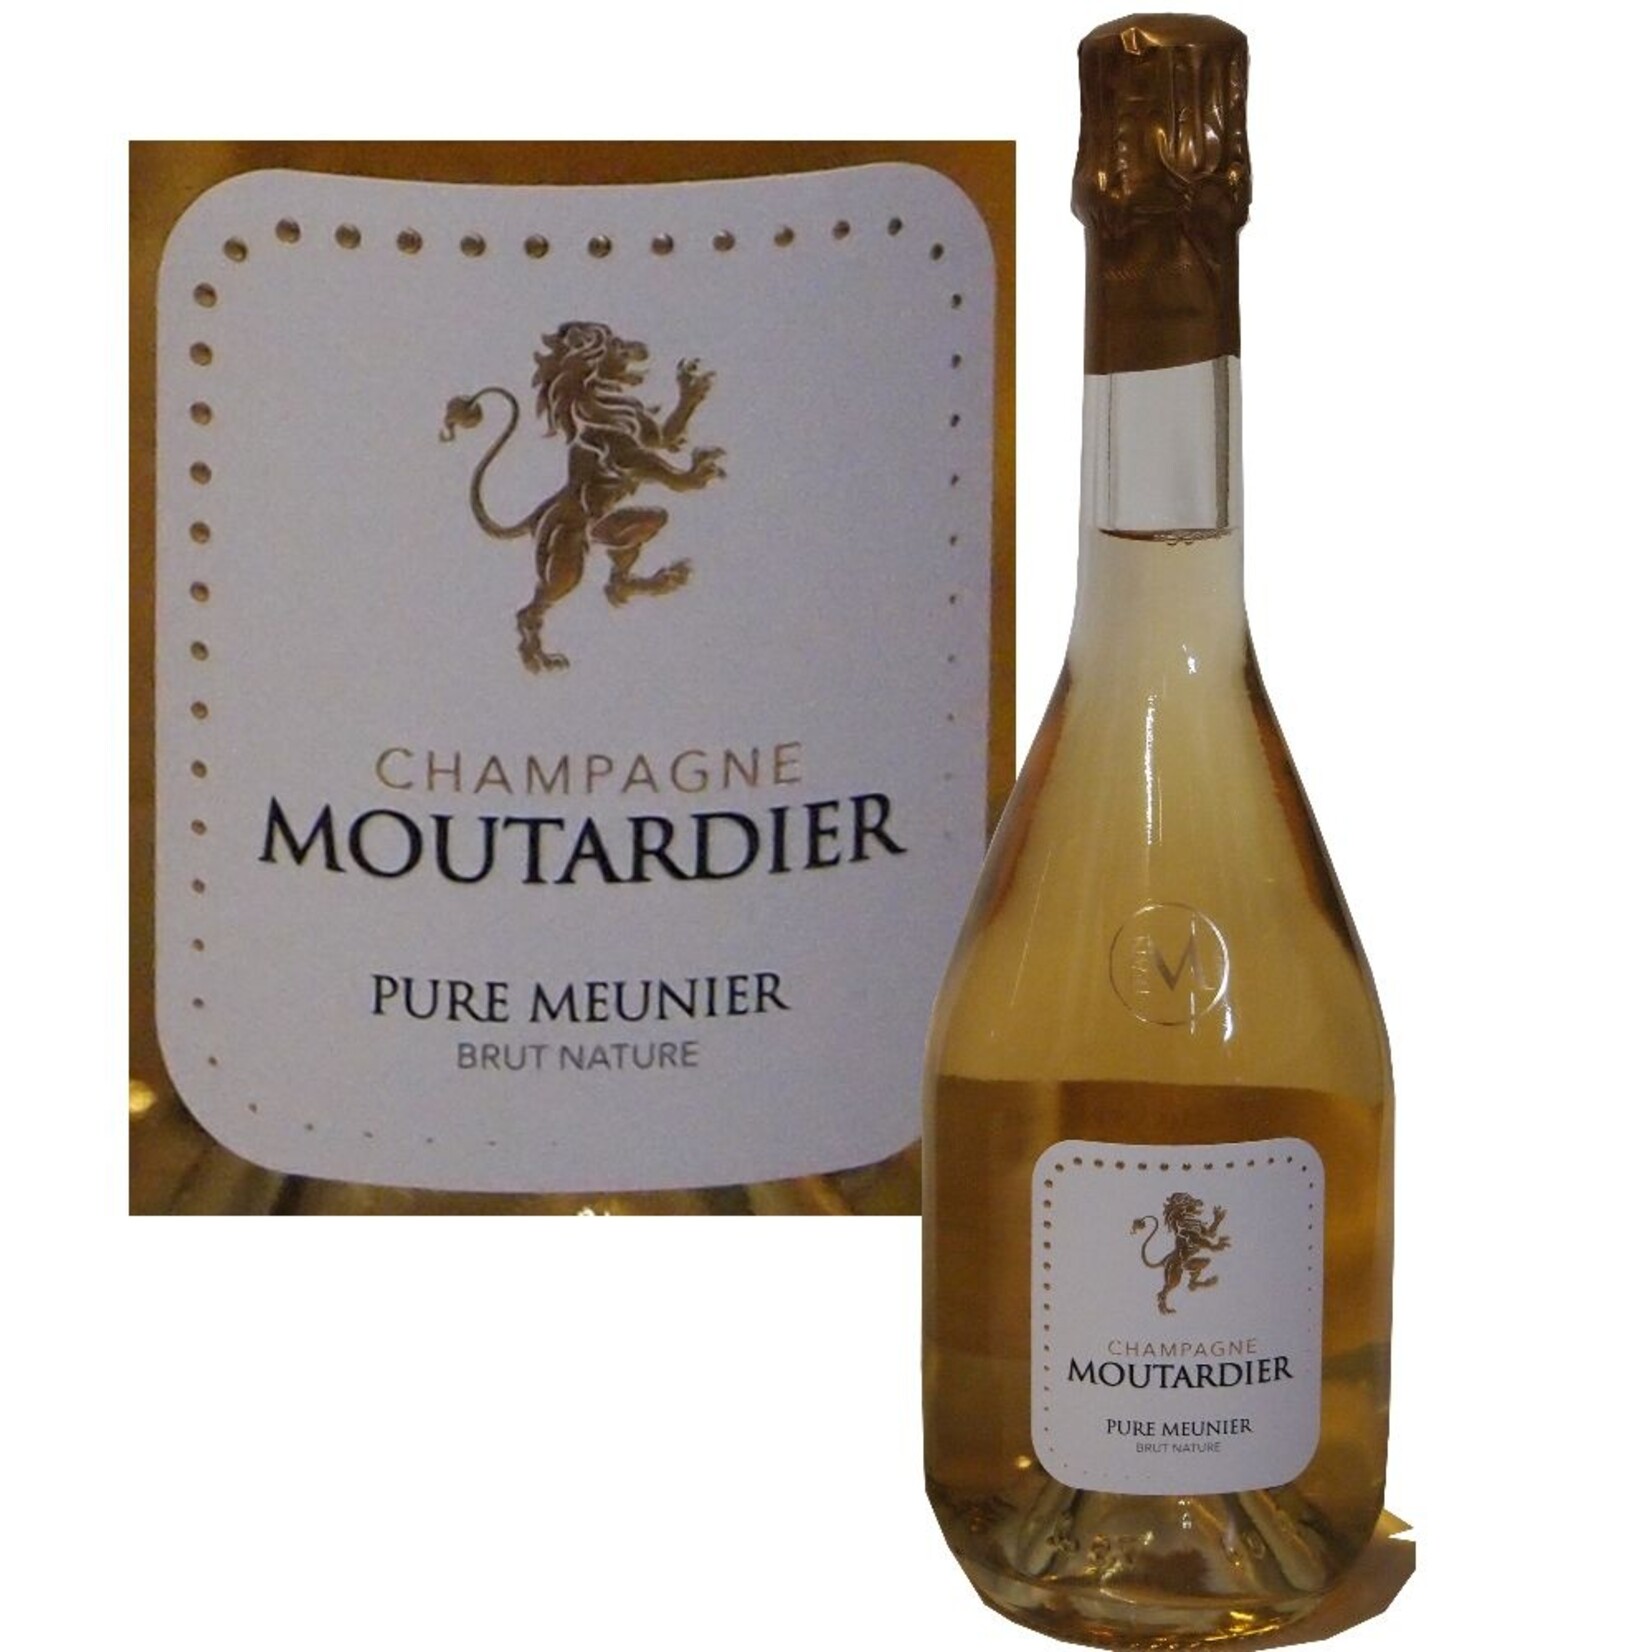 Champagne Moutardier Champagne Moutardier Pure Meunier Brut